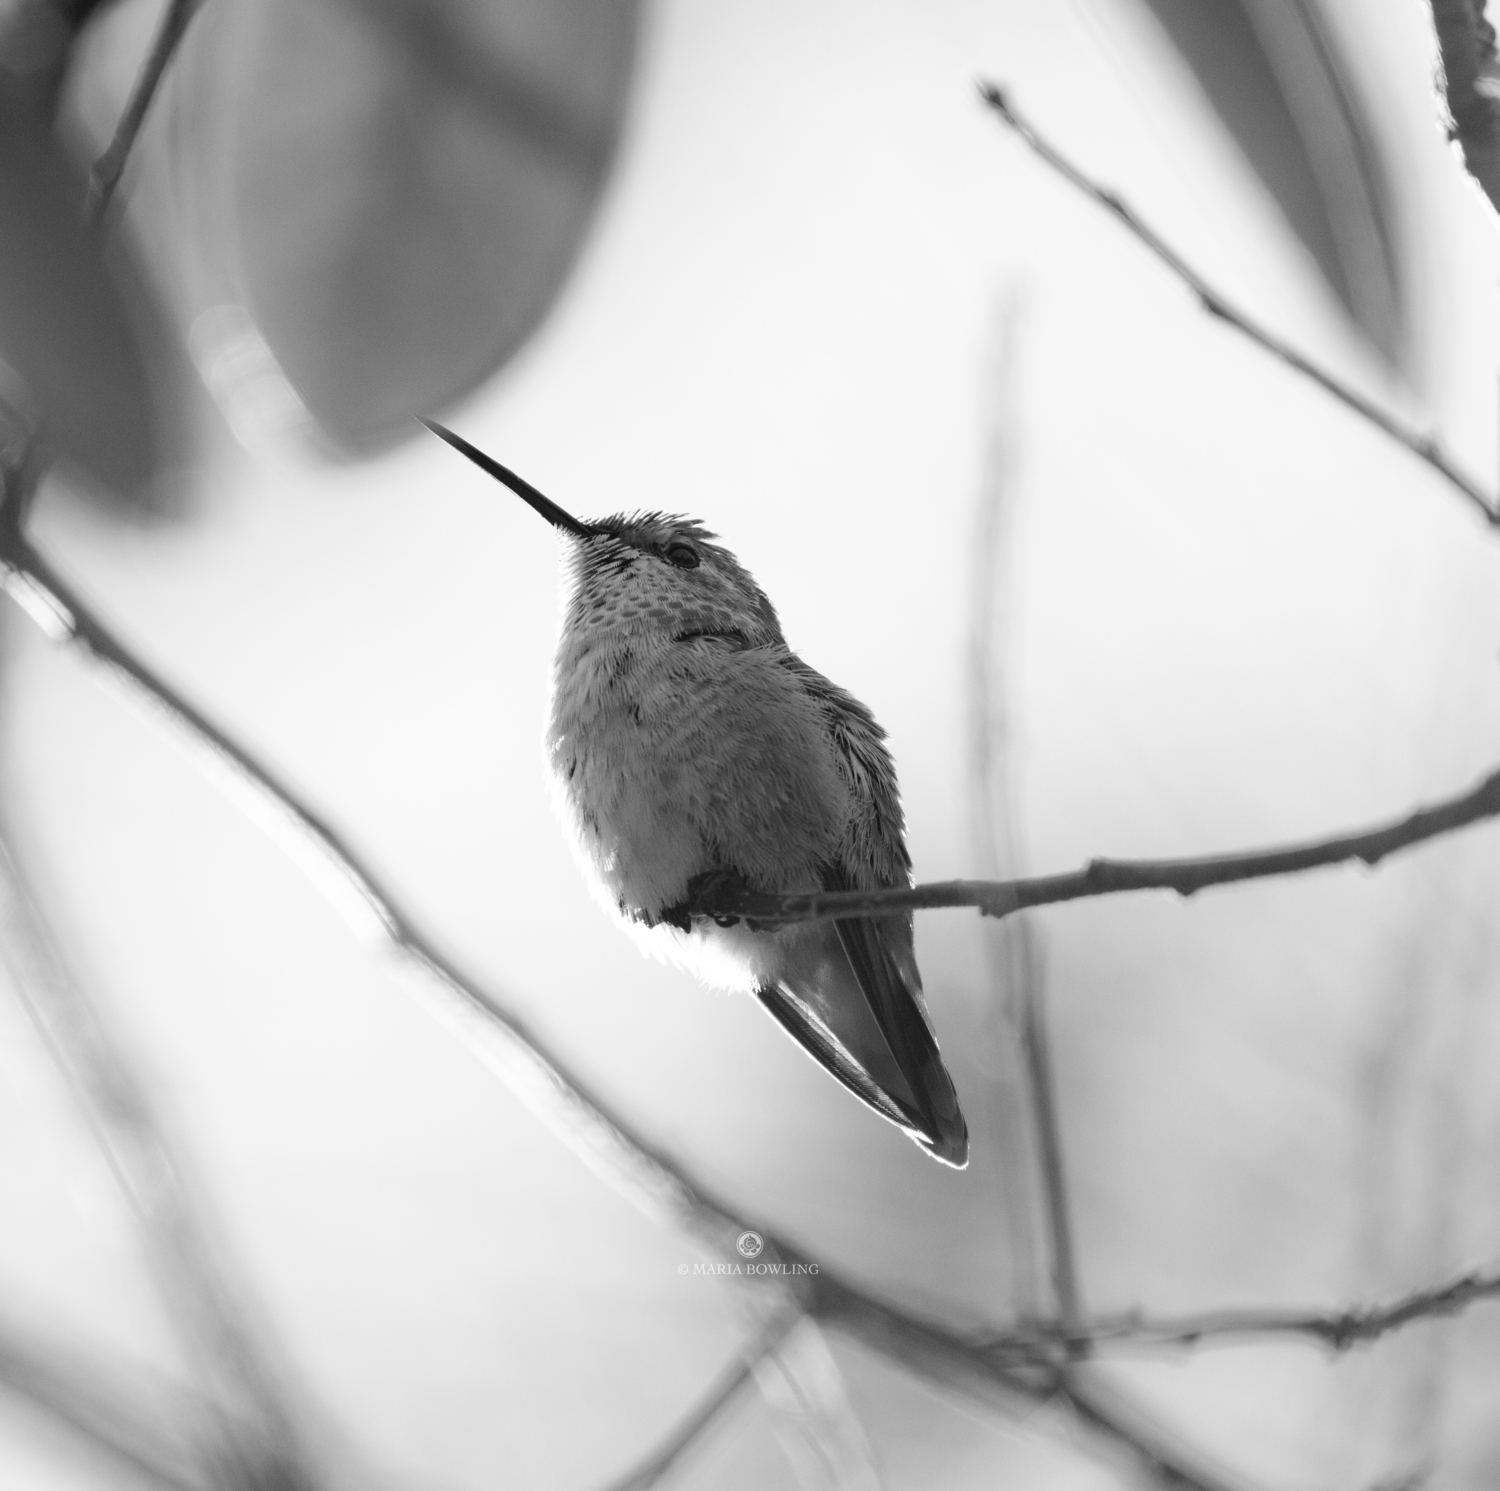 A rufous hummingbird. Dr. Maria Bowling photograph